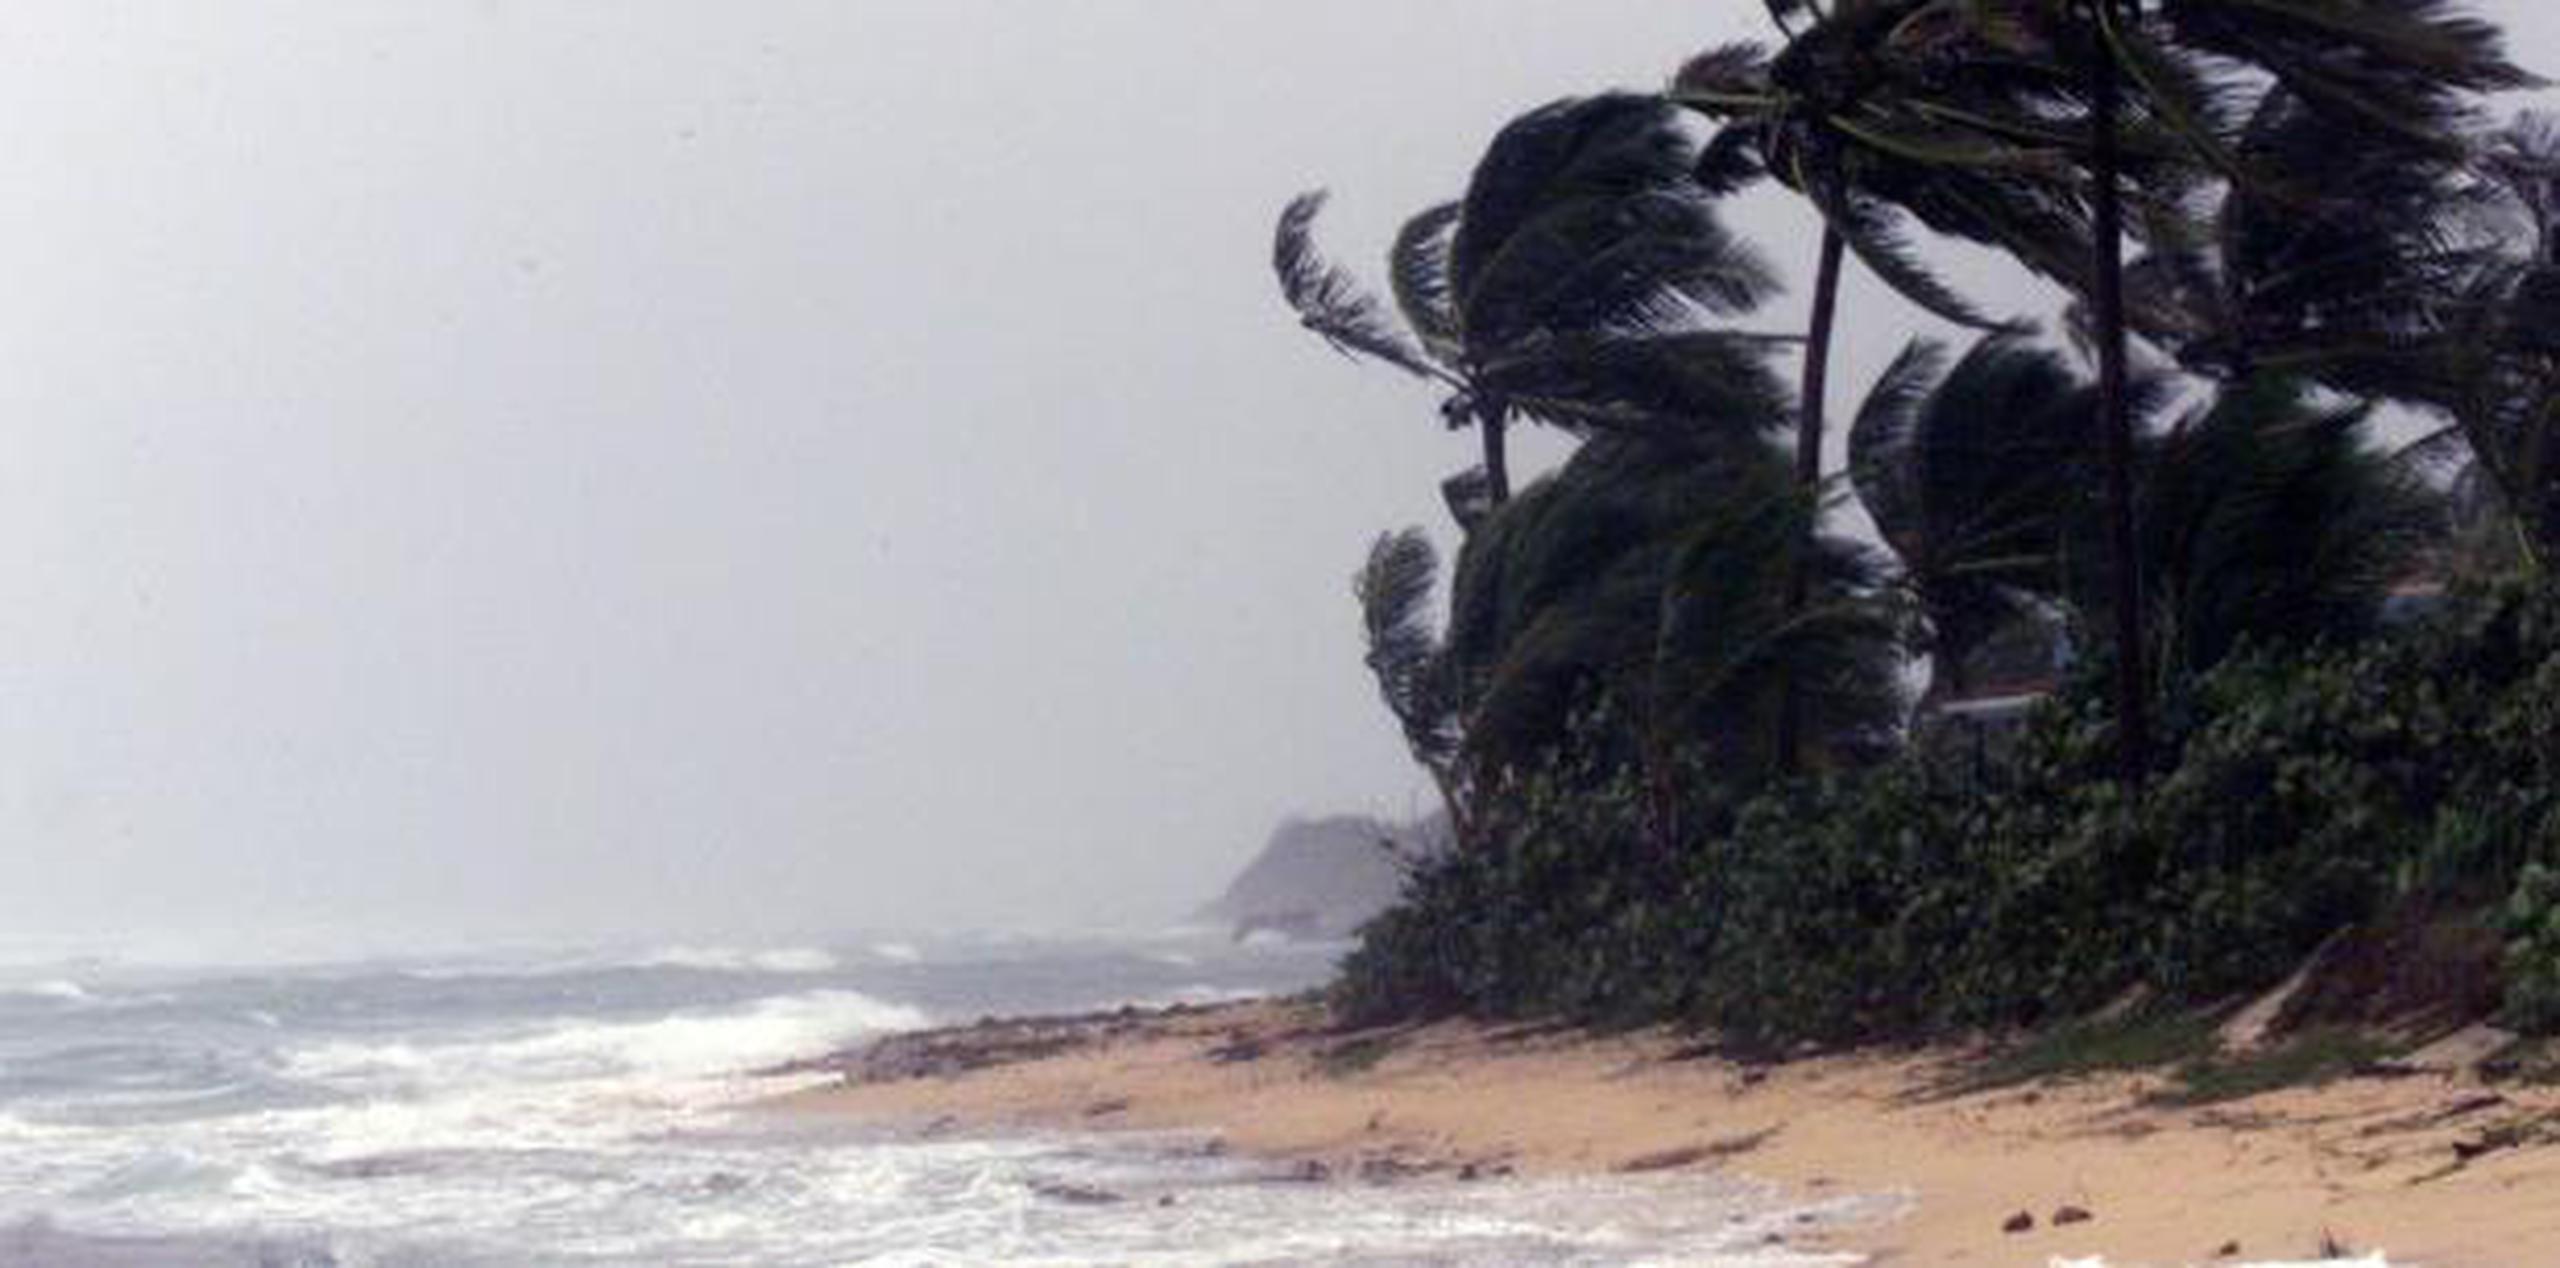 El Servicio Nacional de Meteorología no recomienda a los bañistas utilizar las playas, pues se espera oleaje picado y extremo, así como un riesgo de corrientes marinas alto. (Archivo)